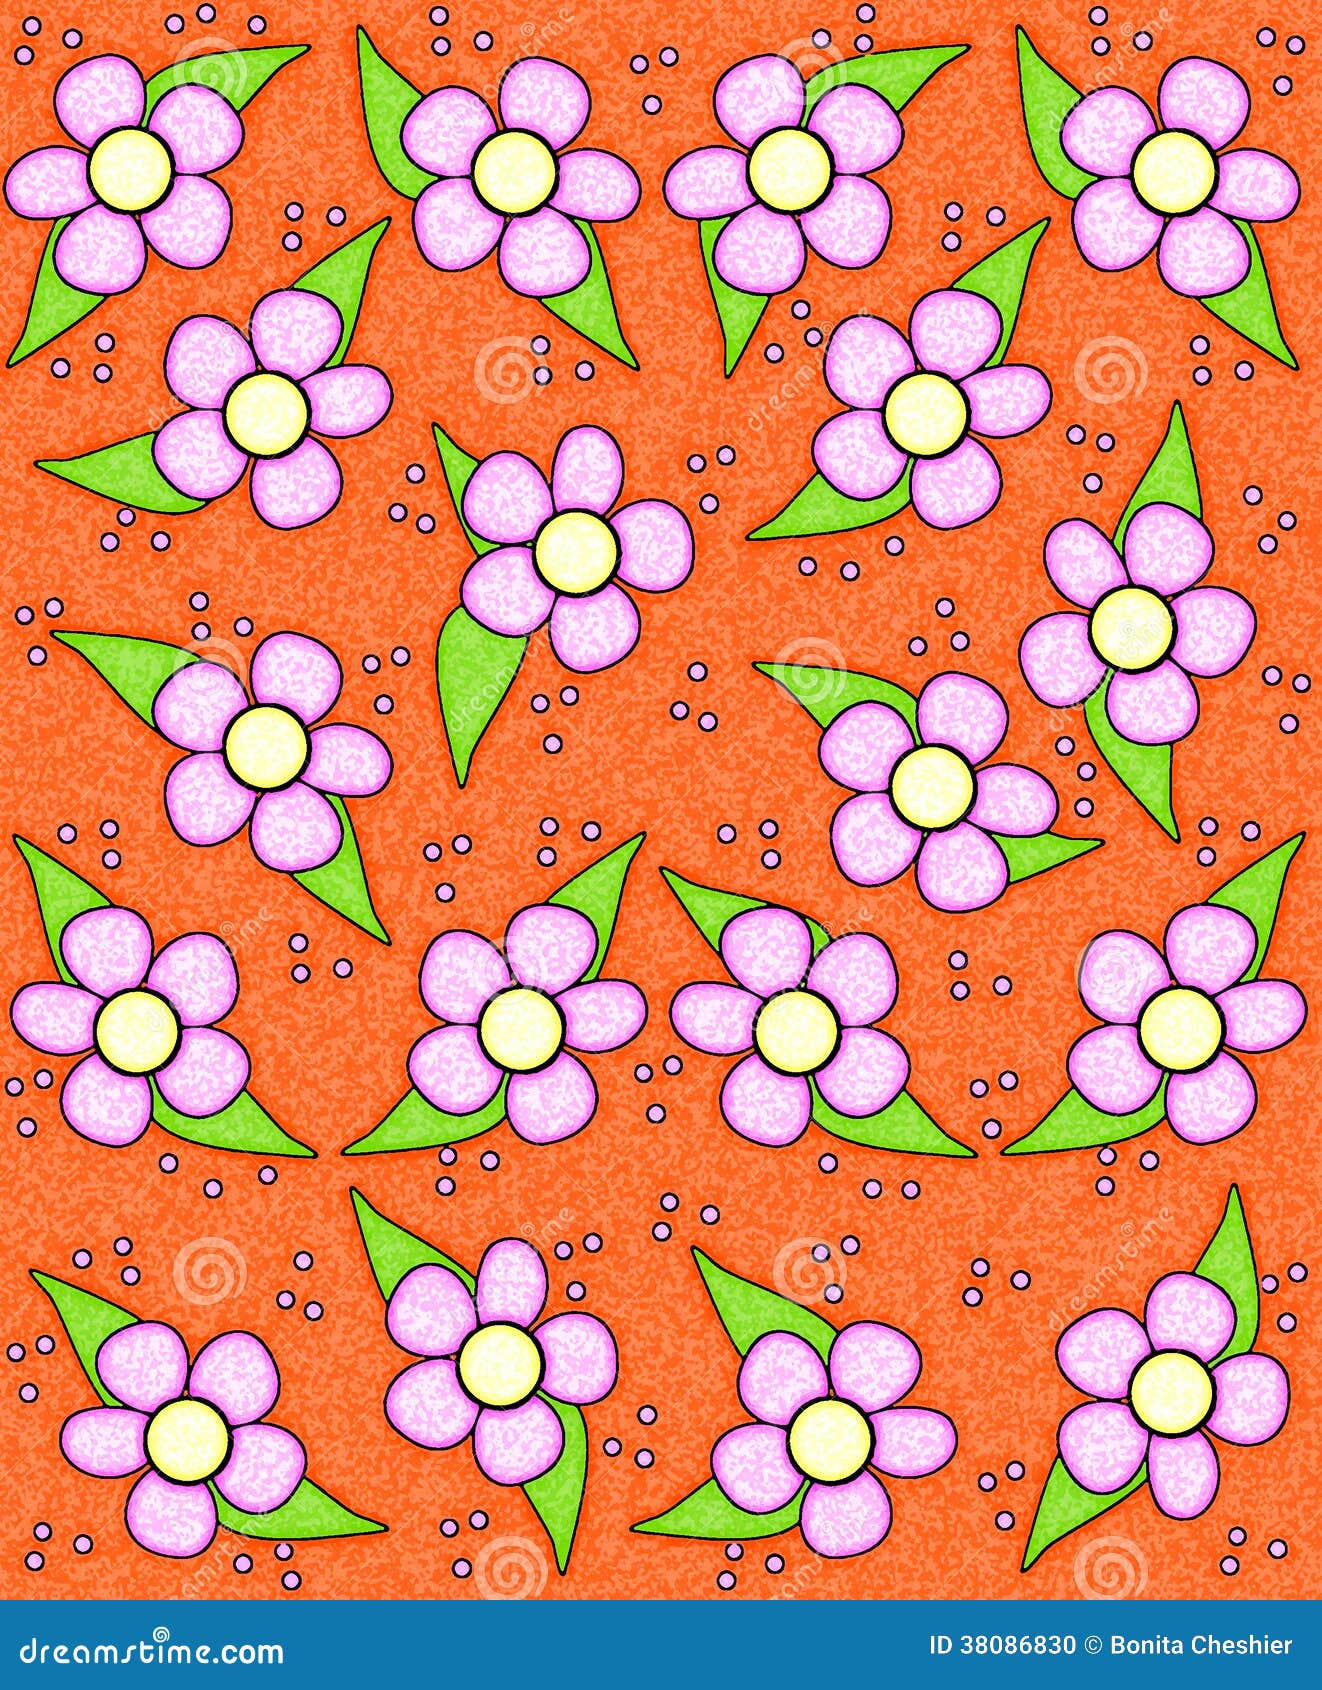 Primavera di colore di acqua in arancia. I fiori di stile degli anni 70 riempiono il fondo arancio. I fiori sono evidenziati con incandescenza bianca morbida.  L'intera immagine ha pulito la struttura con una spugna.